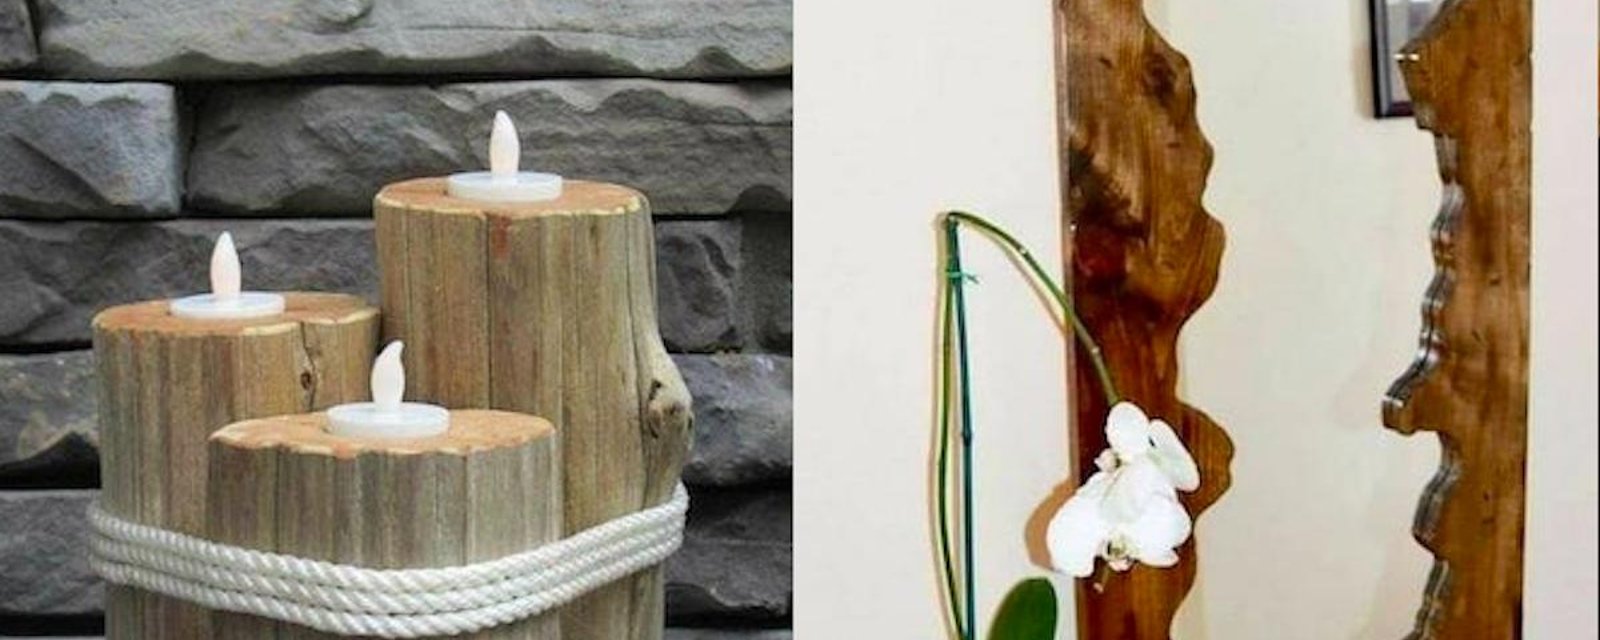 18  créations en bois qui pourraient vous inspirer de futures réalisations pour votre maison